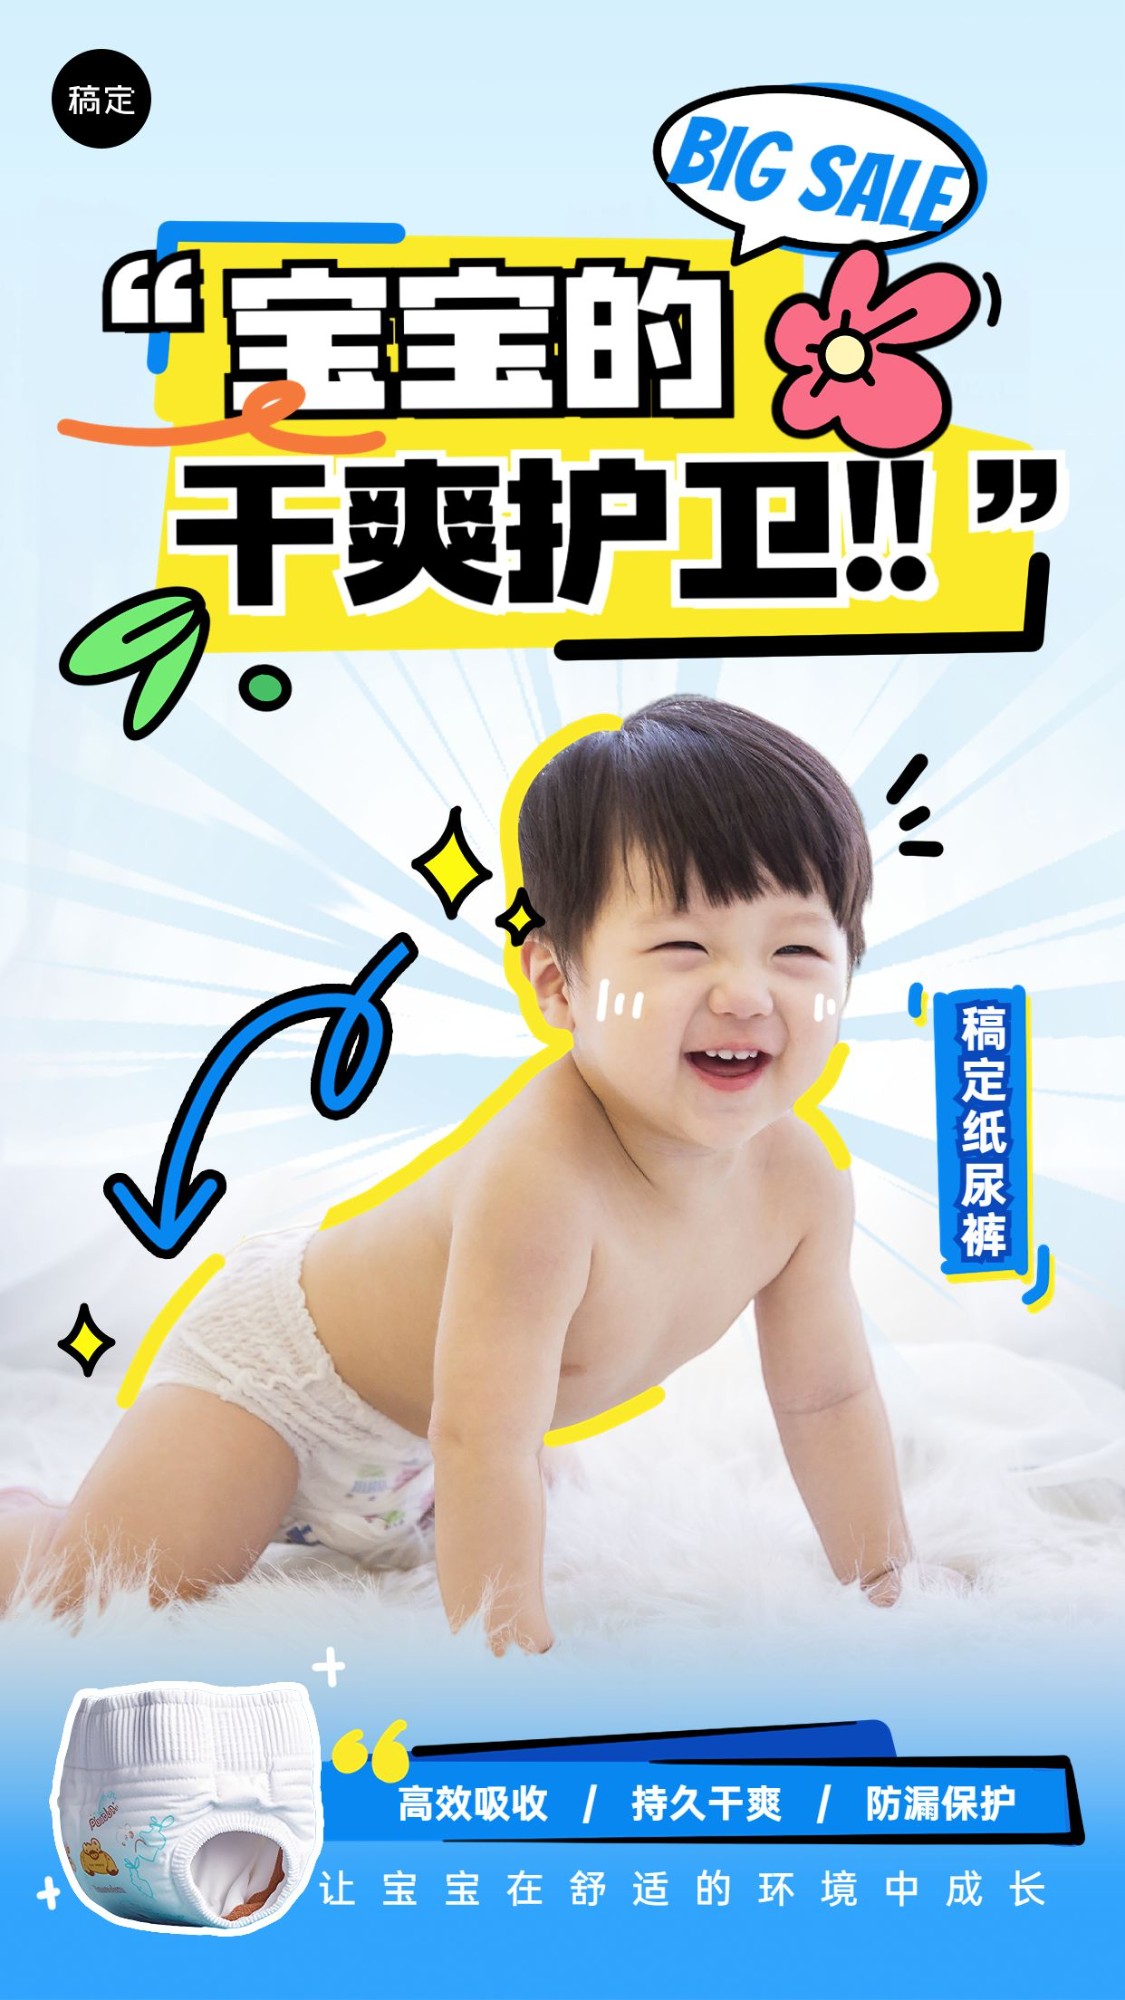 母婴亲子营销卖货产品展示手机海报AIGC预览效果